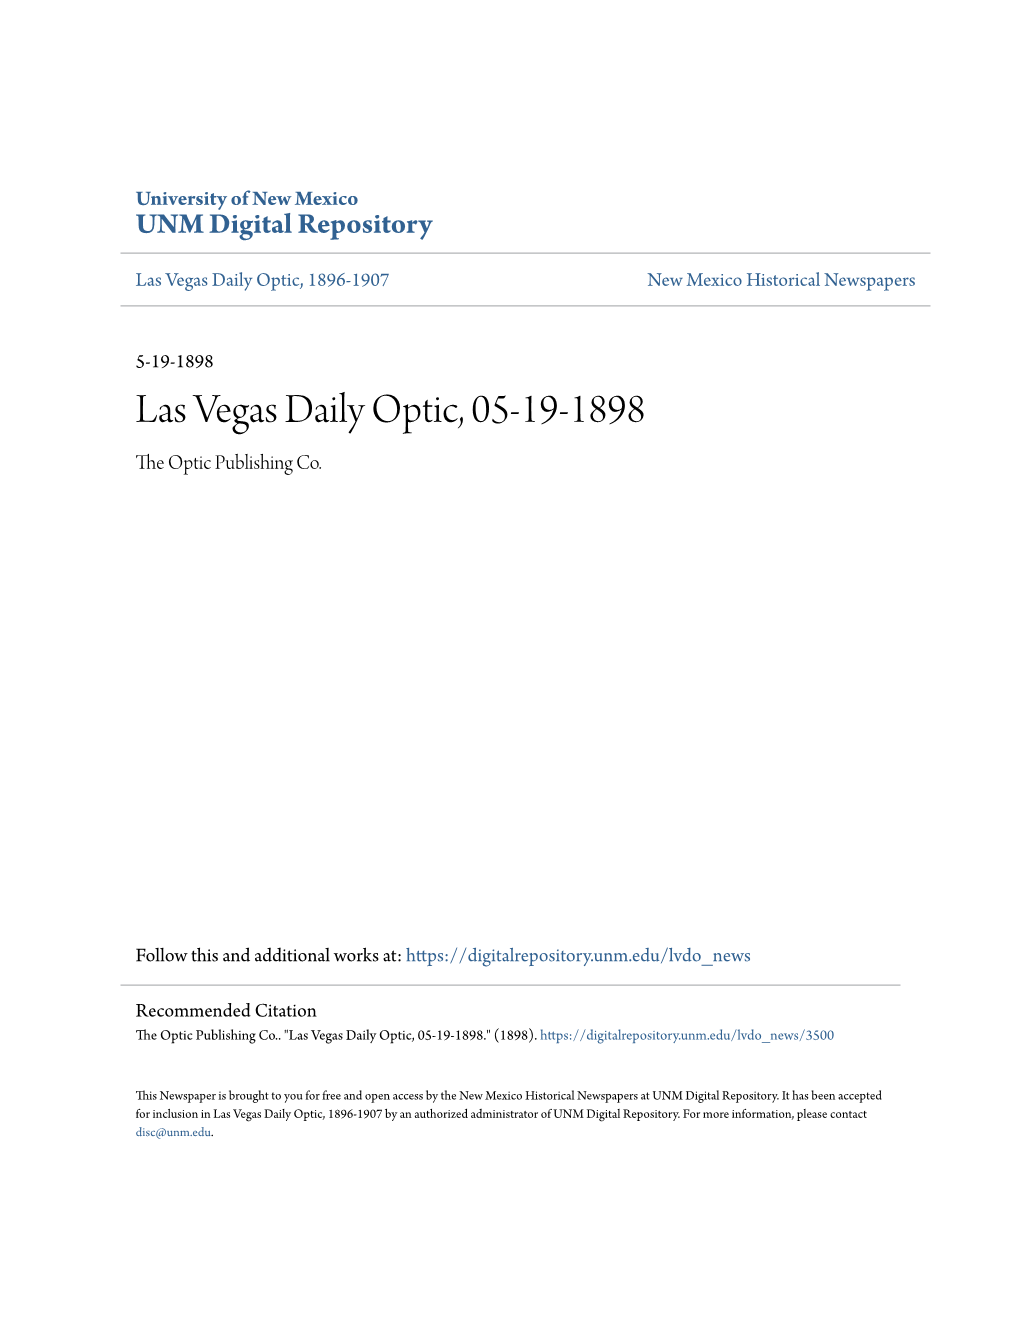 Las Vegas Daily Optic, 05-19-1898 the Optic Publishing Co